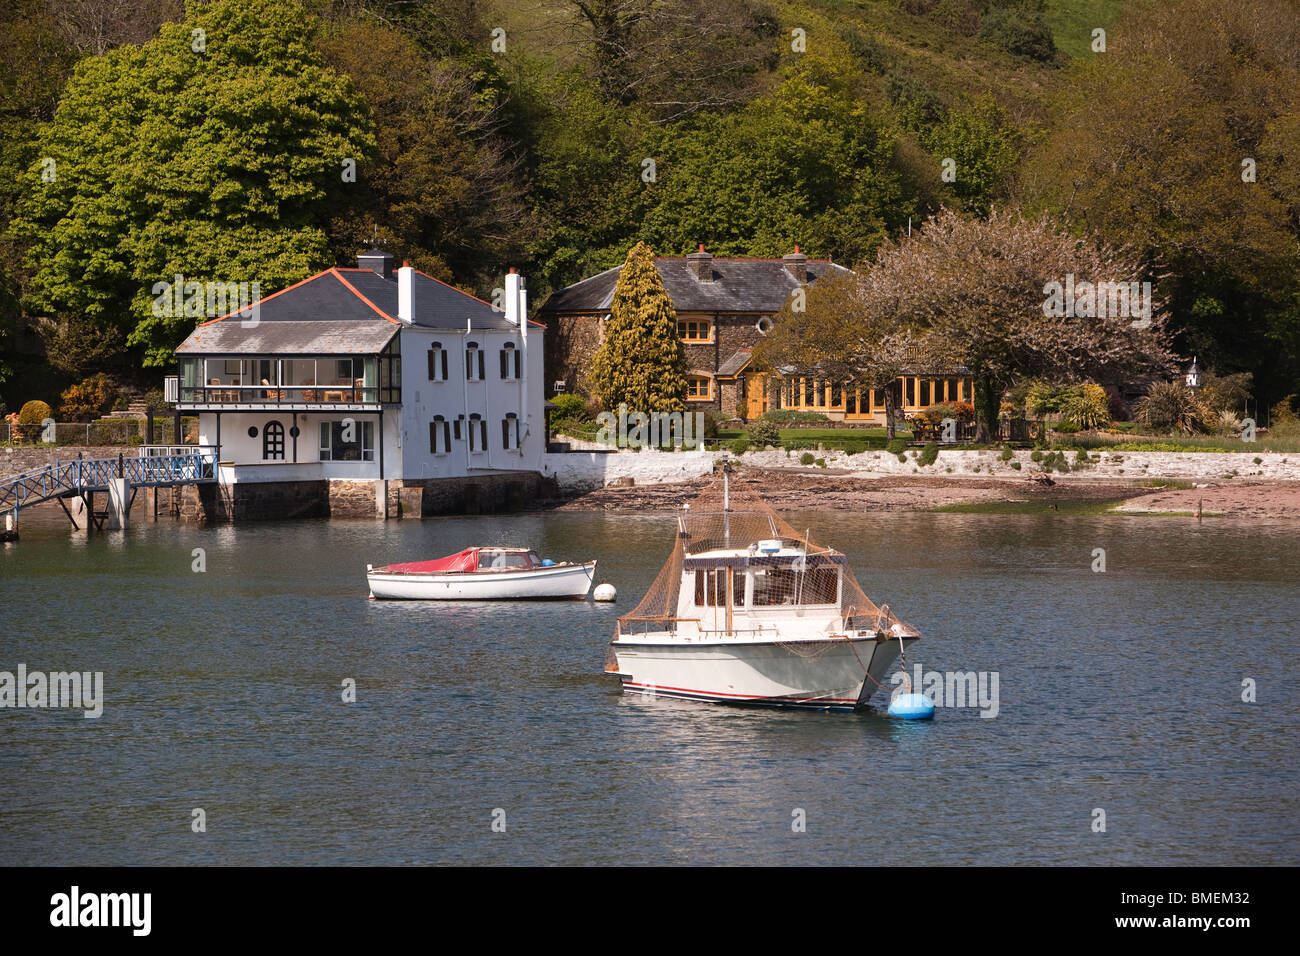 Regno Unito, Inghilterra, Devon, Dartmouth, maggiore Noss punto, River Dart, costosi riverside proprietà con il boathouse Foto Stock